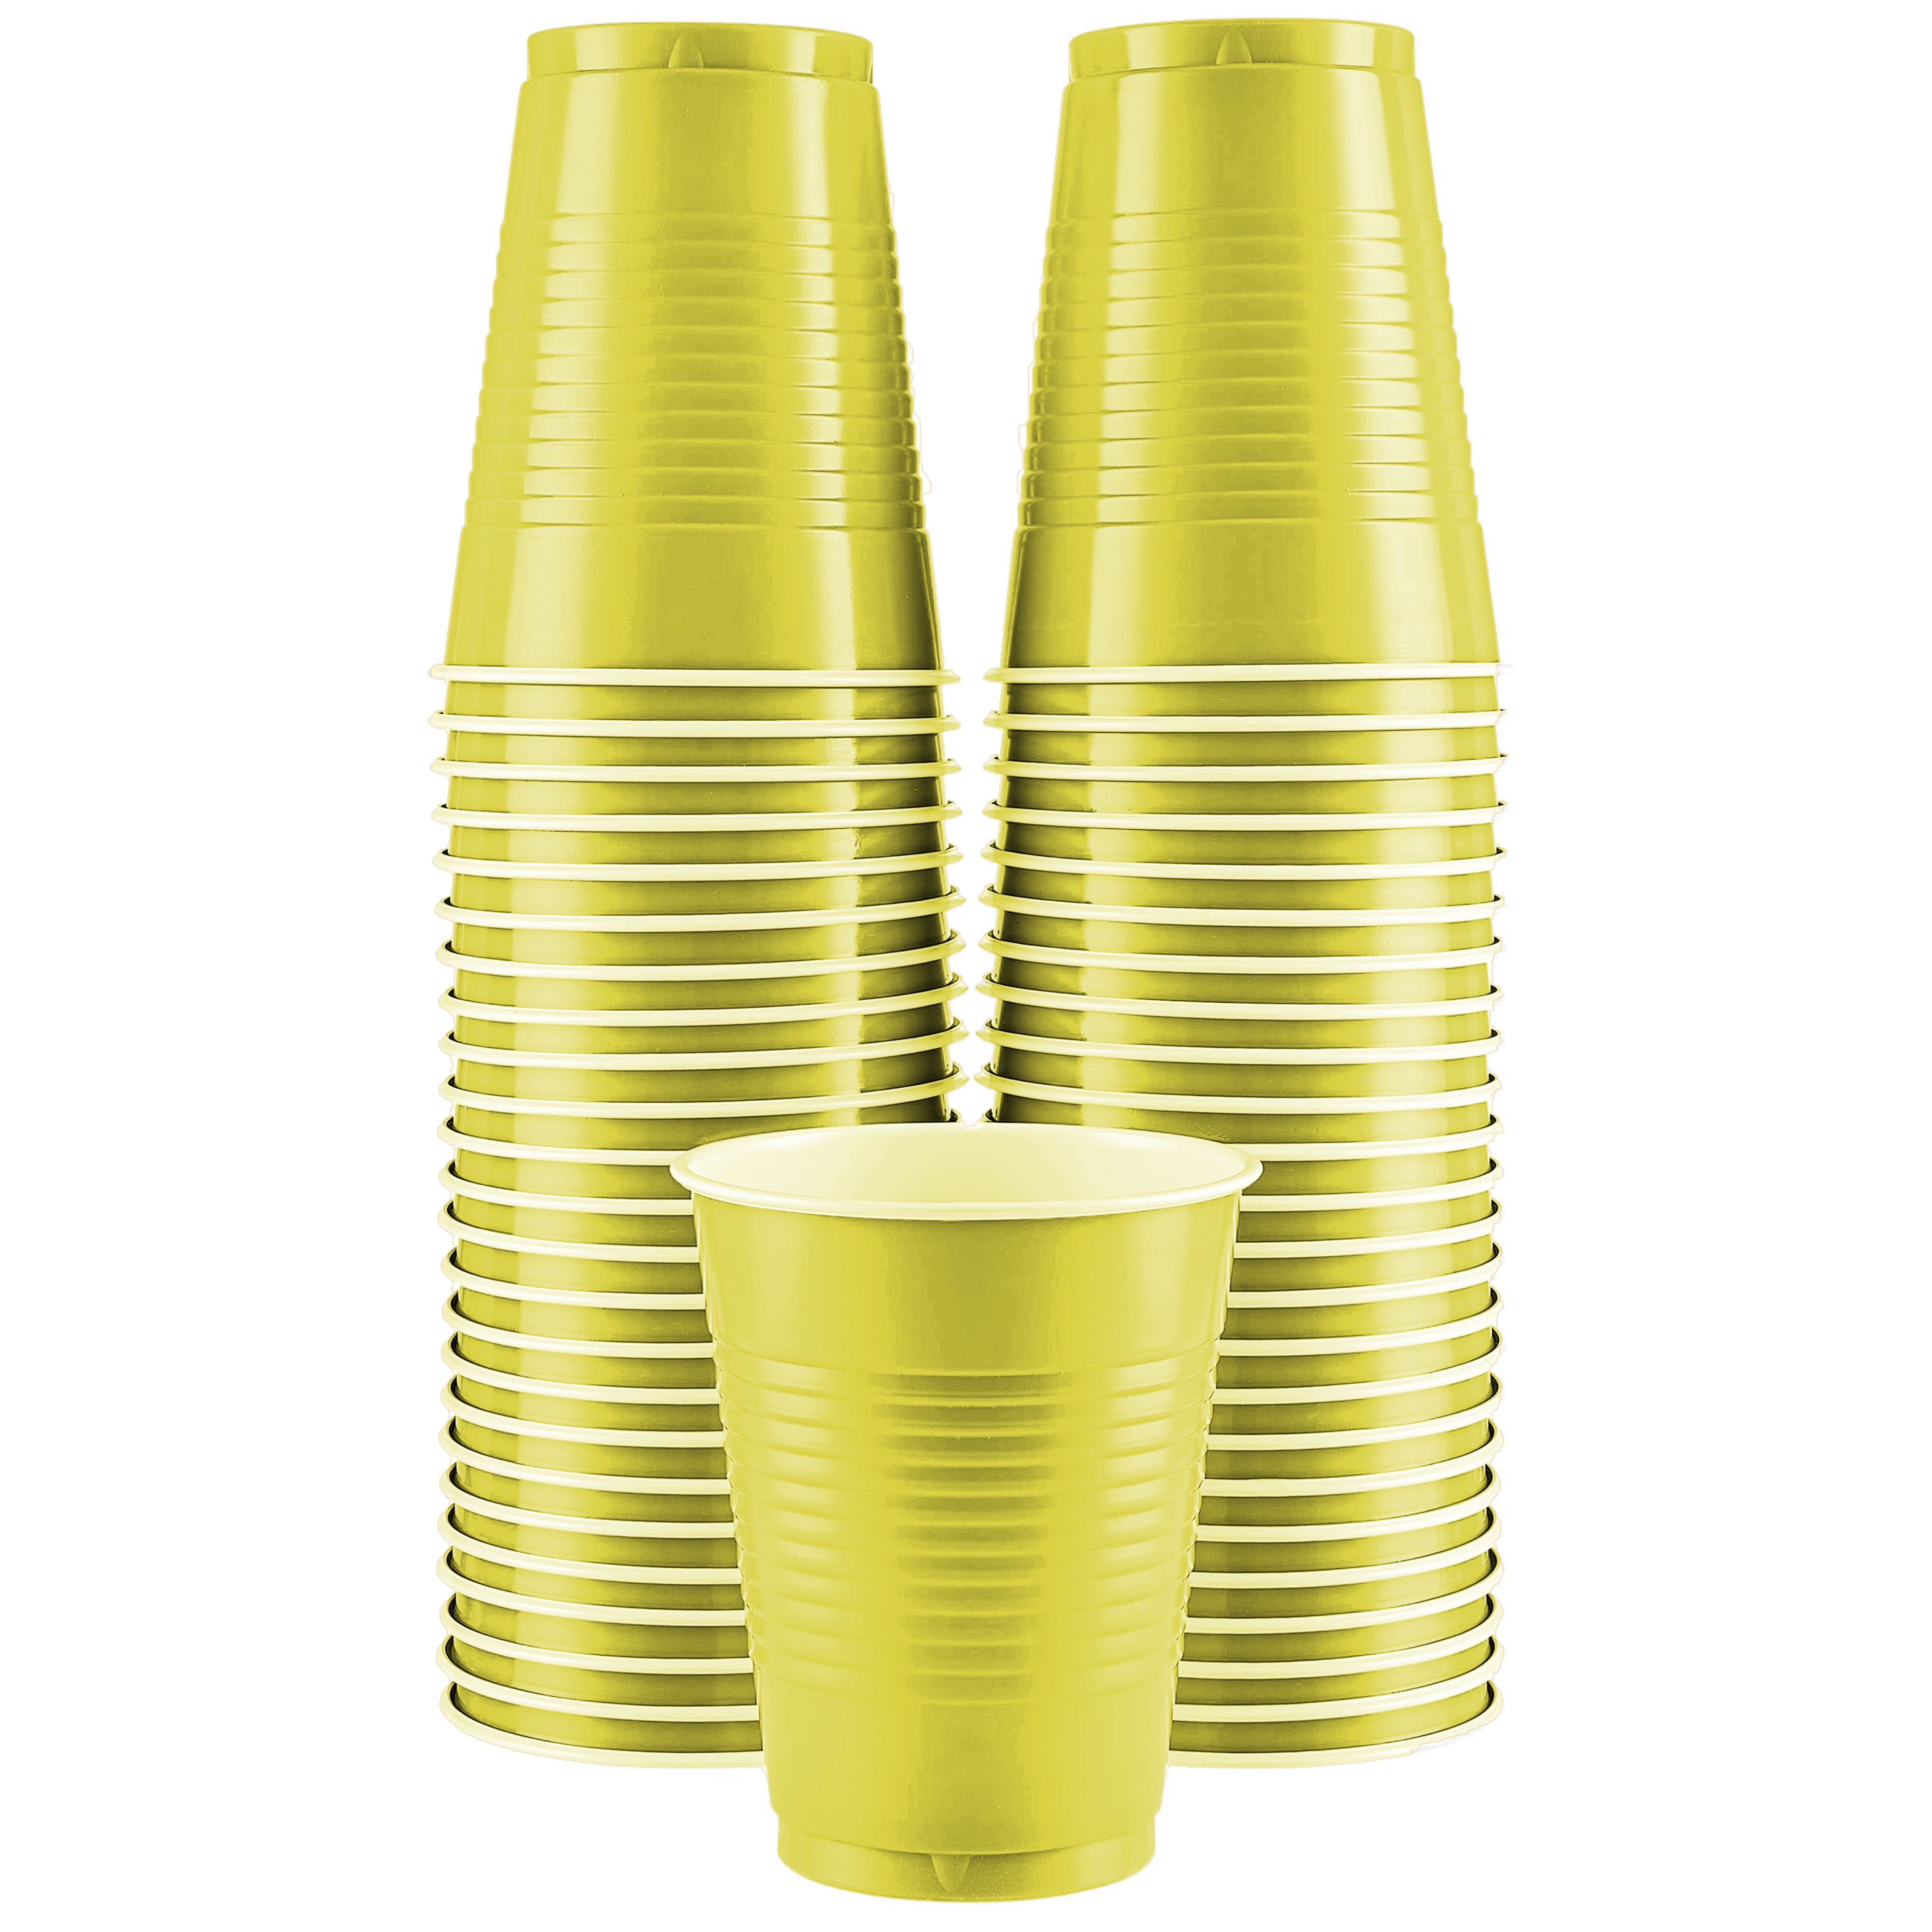  Premium Black Plastic Cups (18 oz) 50 Count